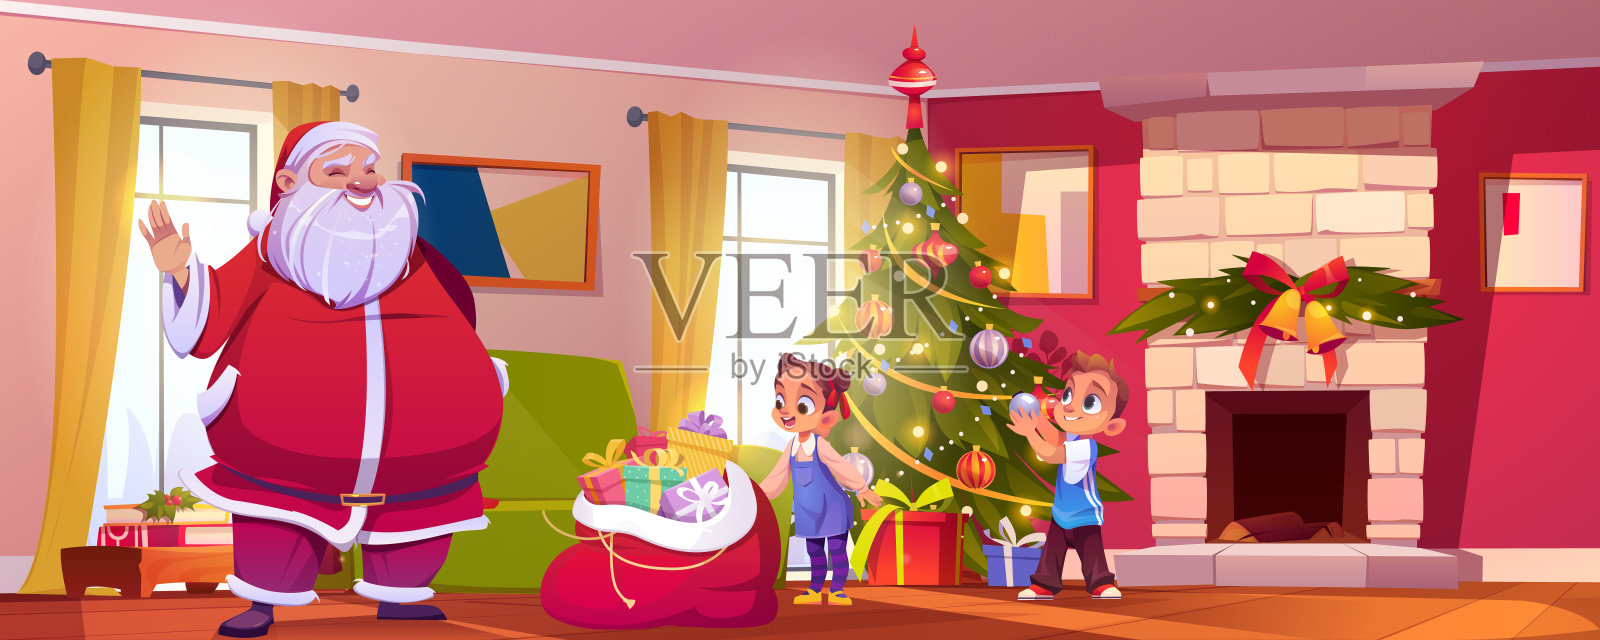 有圣诞老人和壁炉的圣诞客厅插画图片素材